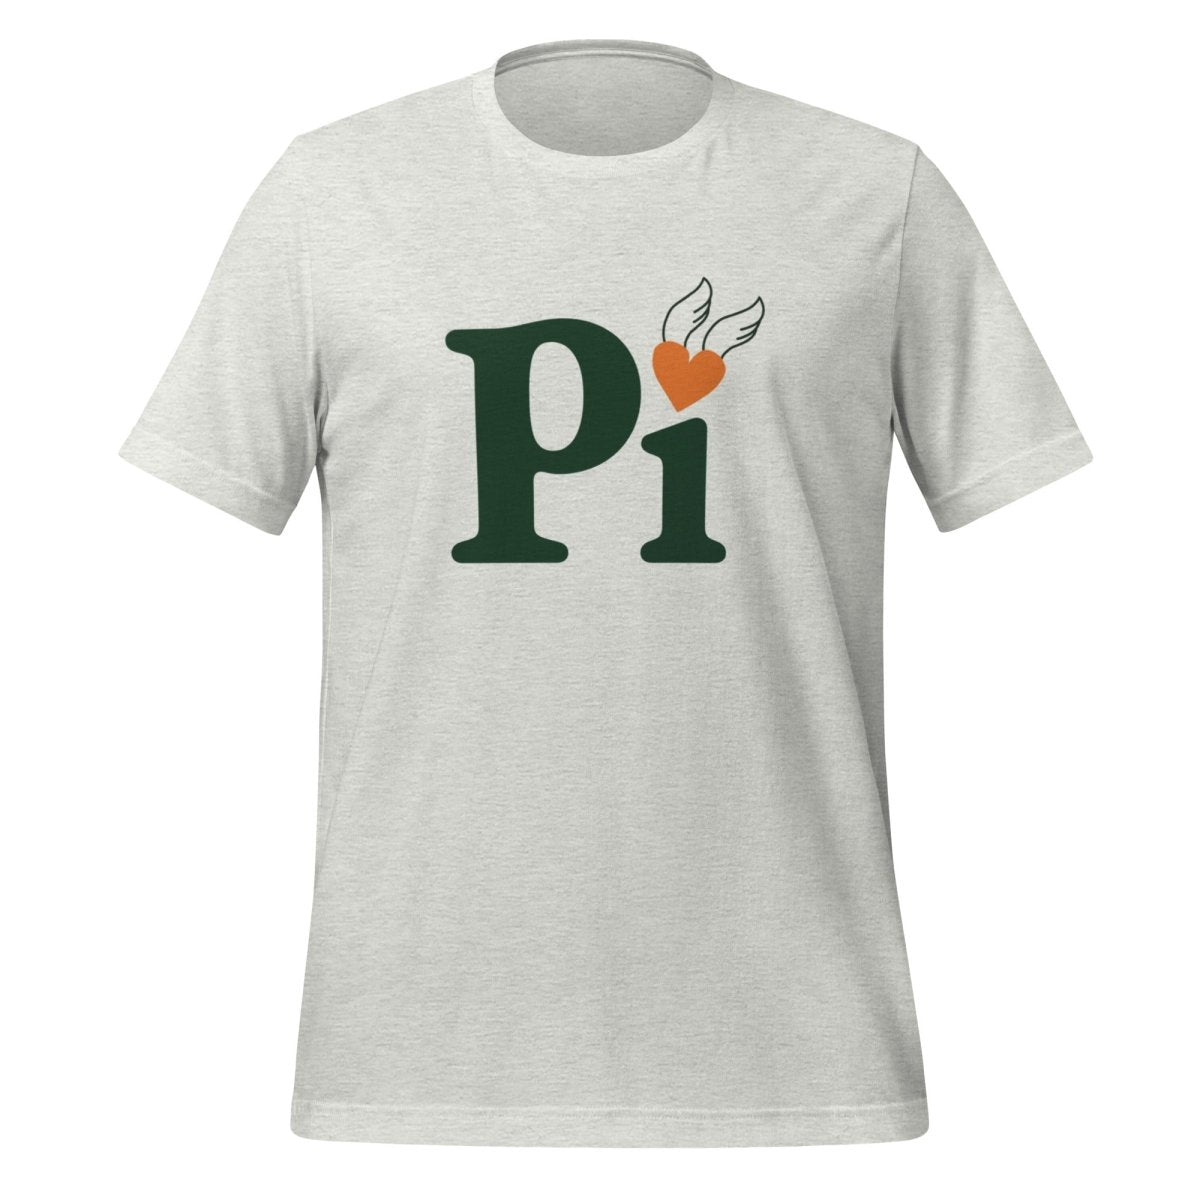 Pi Heart T - Shirt (unisex) - Ash - AI Store